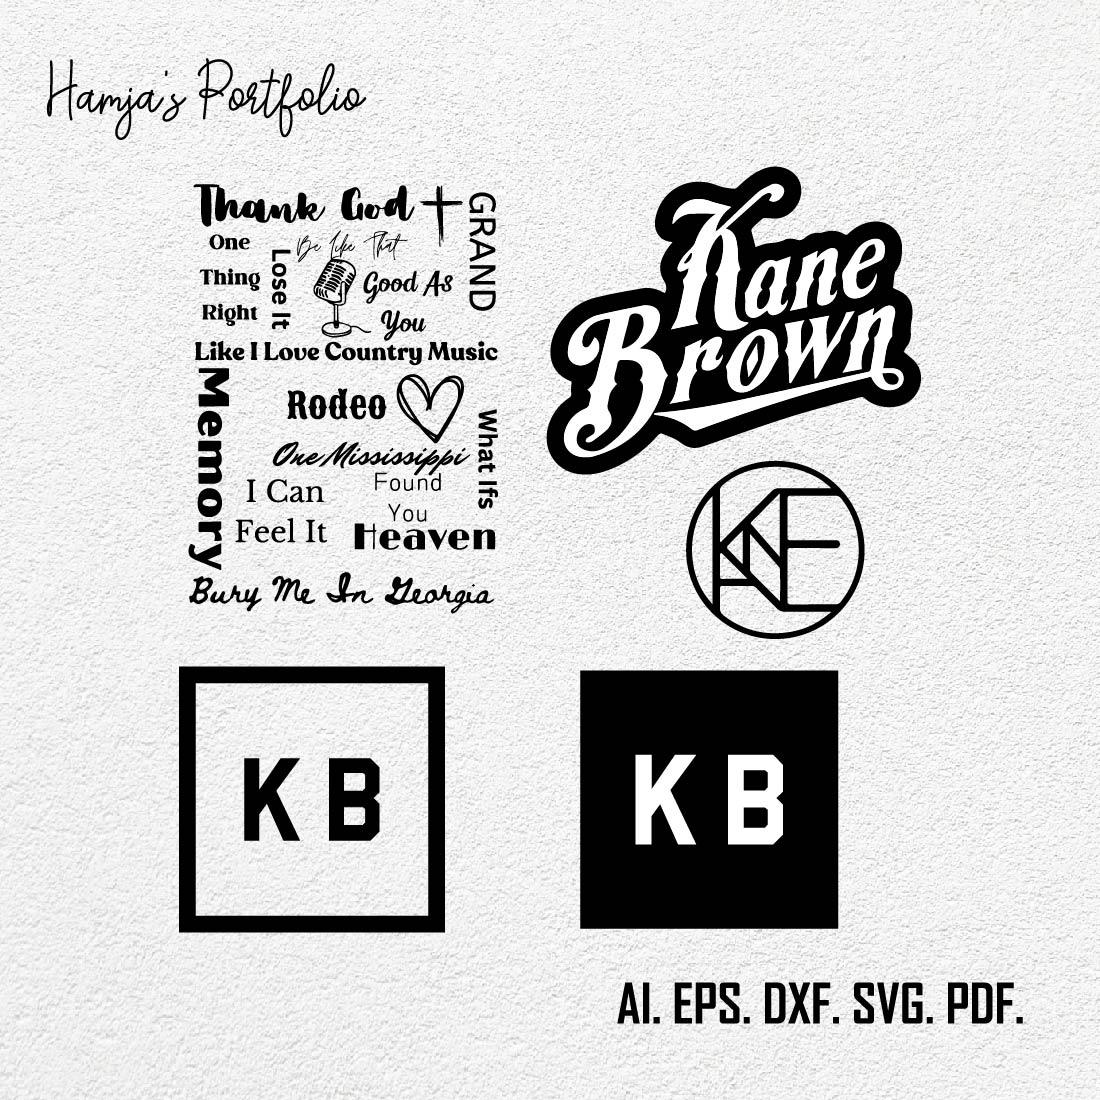 Kane Brown Logo Bundle SVG Digital File, Kane Brown Svg, KB Svg,Kane Brown Song Series Shirt Design SVG Graphic Design File cover image.